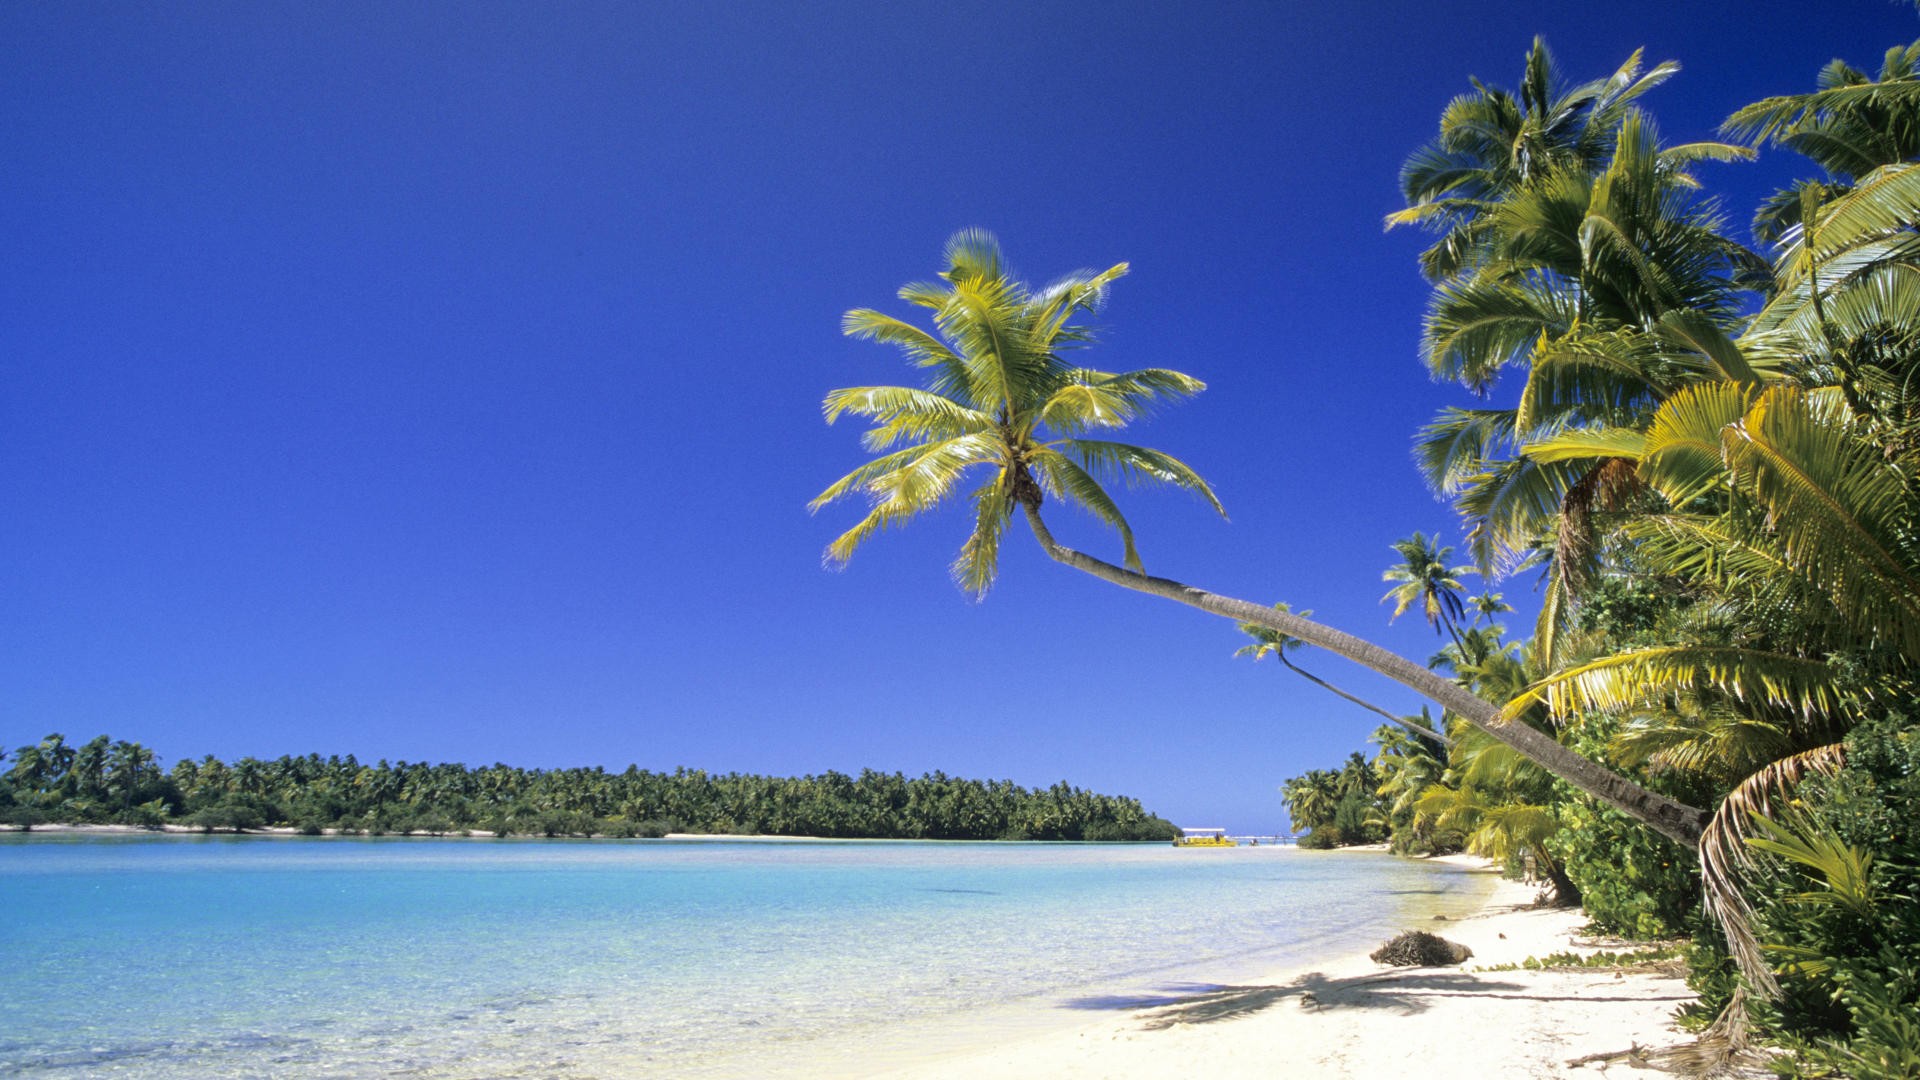 Sun, sand, Cook Islands, palm trees - desktop wallpaper